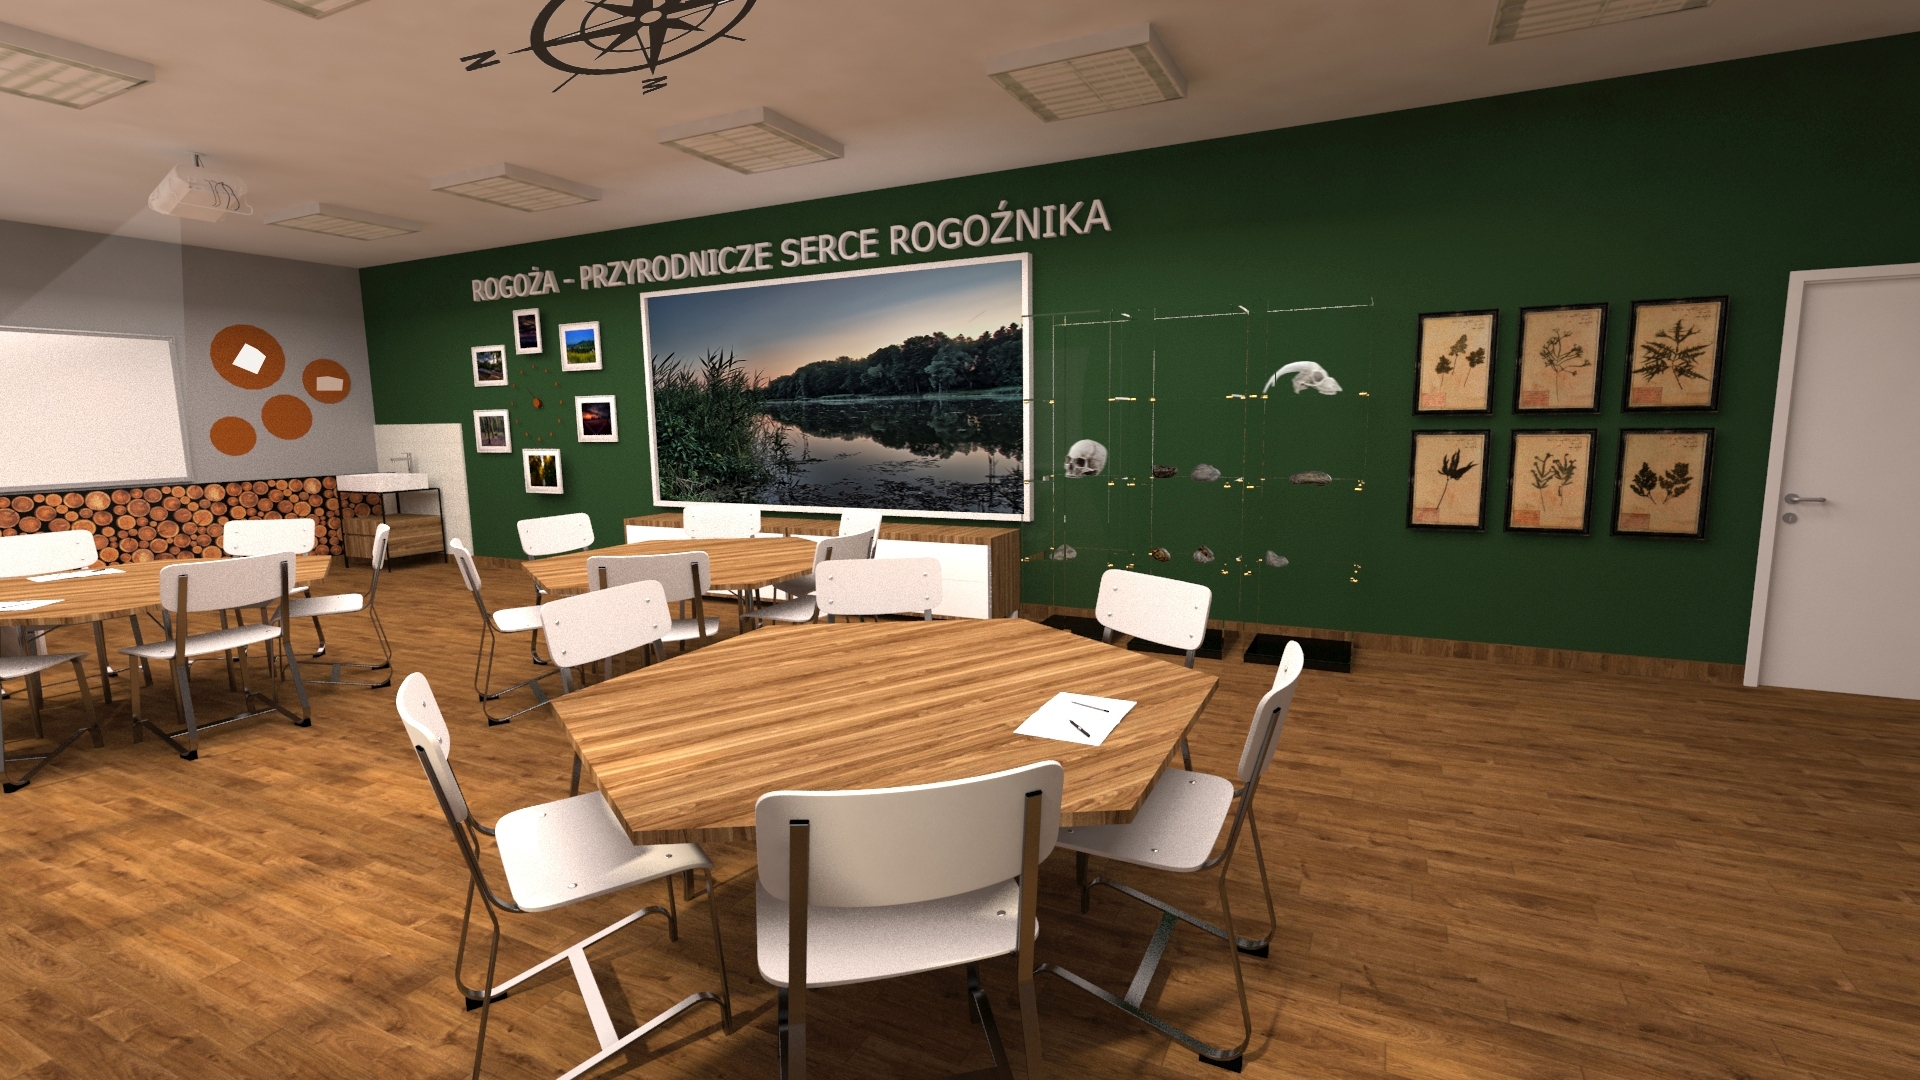 Ilustracja przedstawiająca salę lekcyjną ze stolikami wokół których stoją krzesła, na ścianach obrazki oraz duży plakat